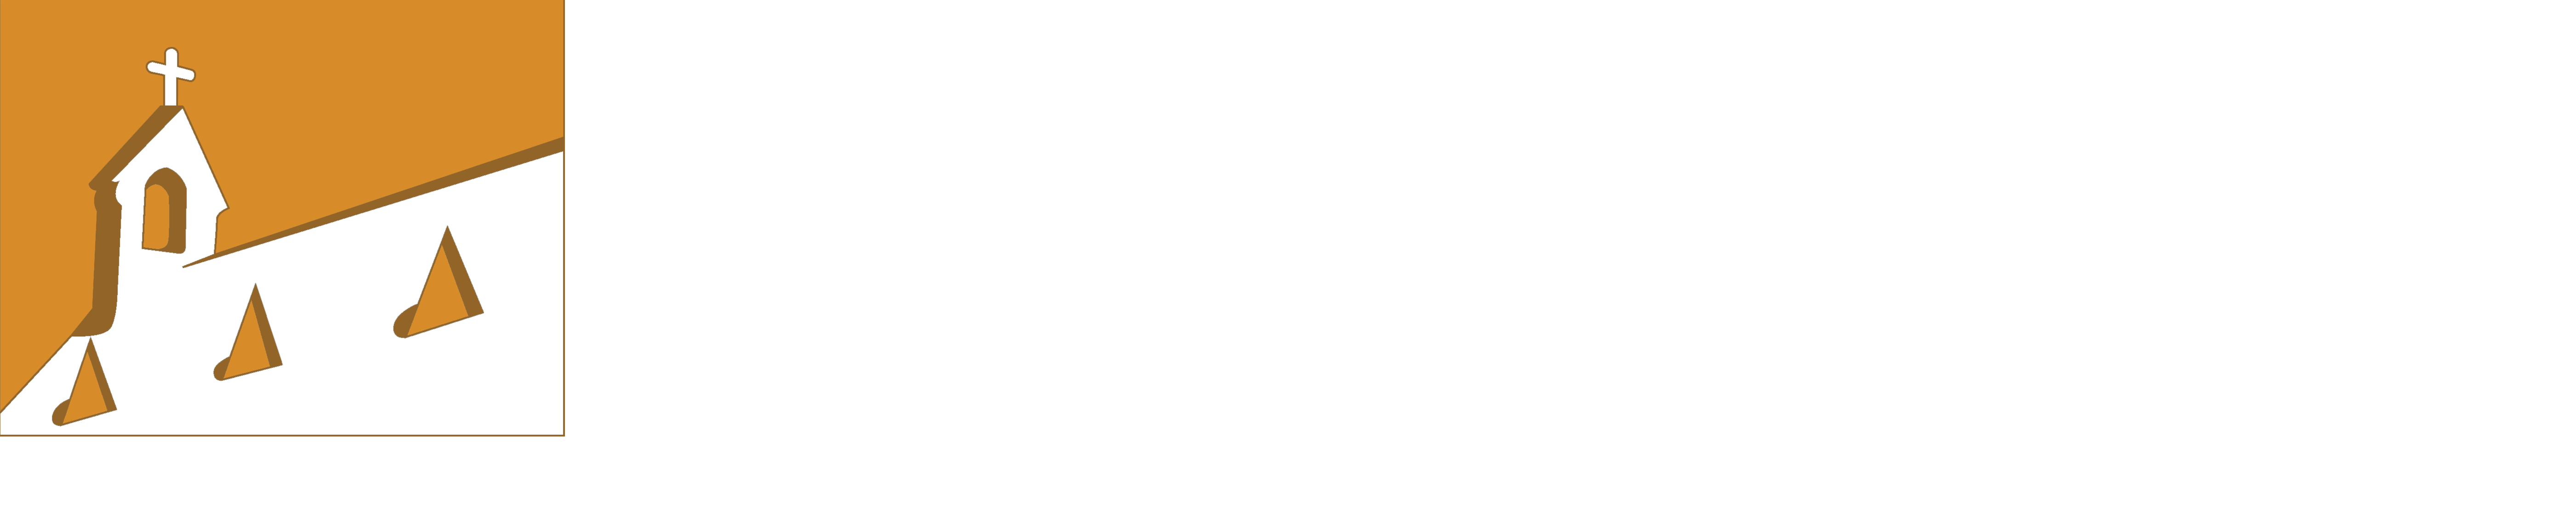 Mid Coast Christian Fellowship